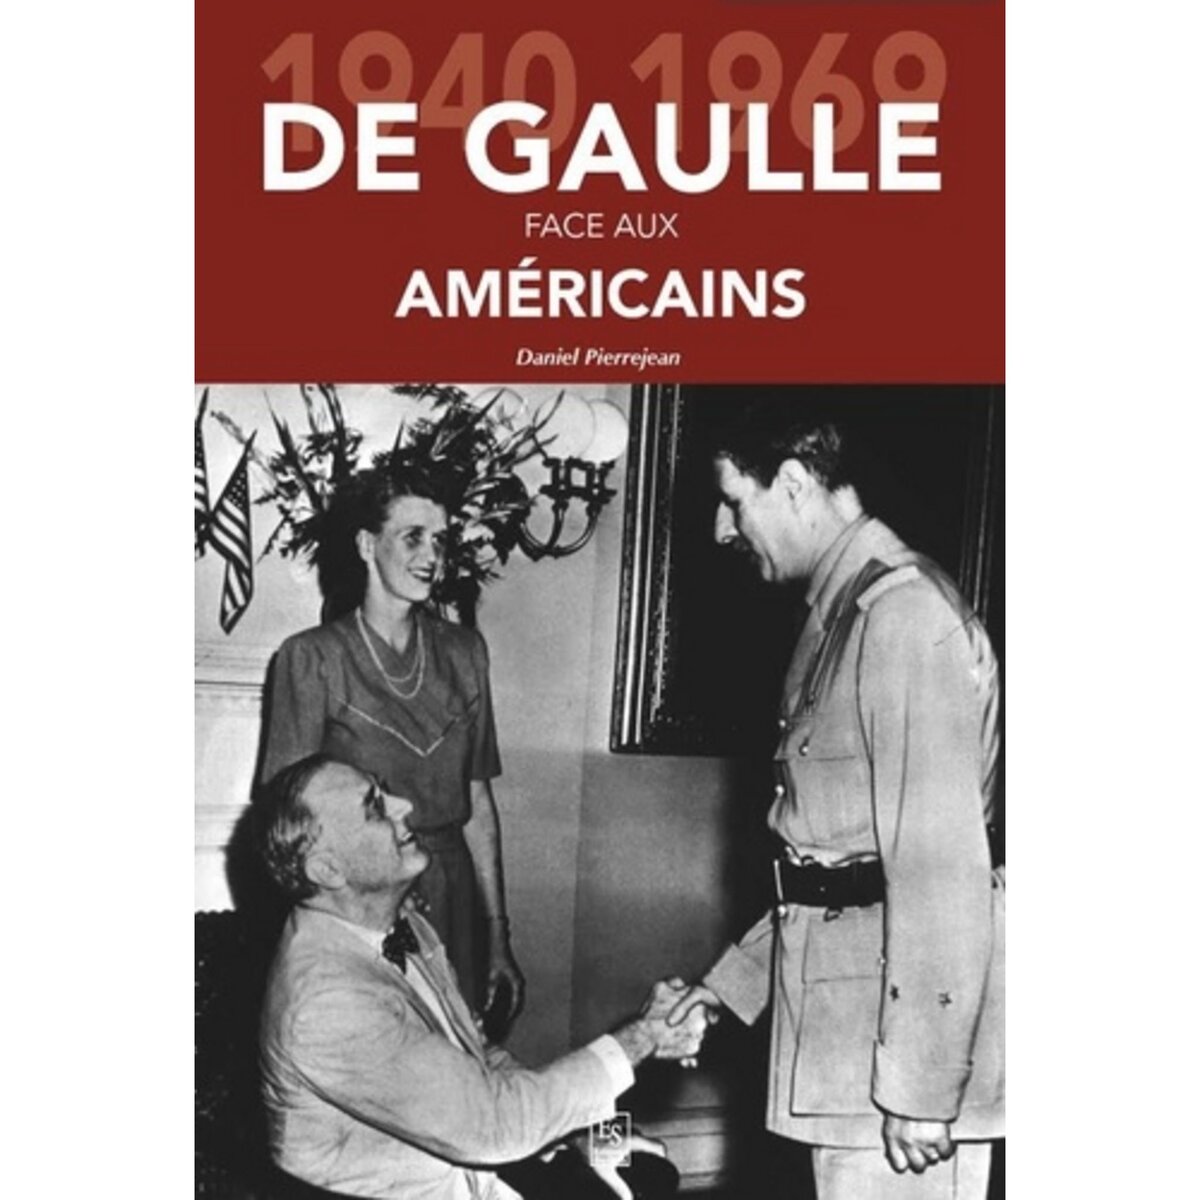  DE GAULLE FACE AUX AMERICAINS. 1940-1969, Pierrejean Daniel